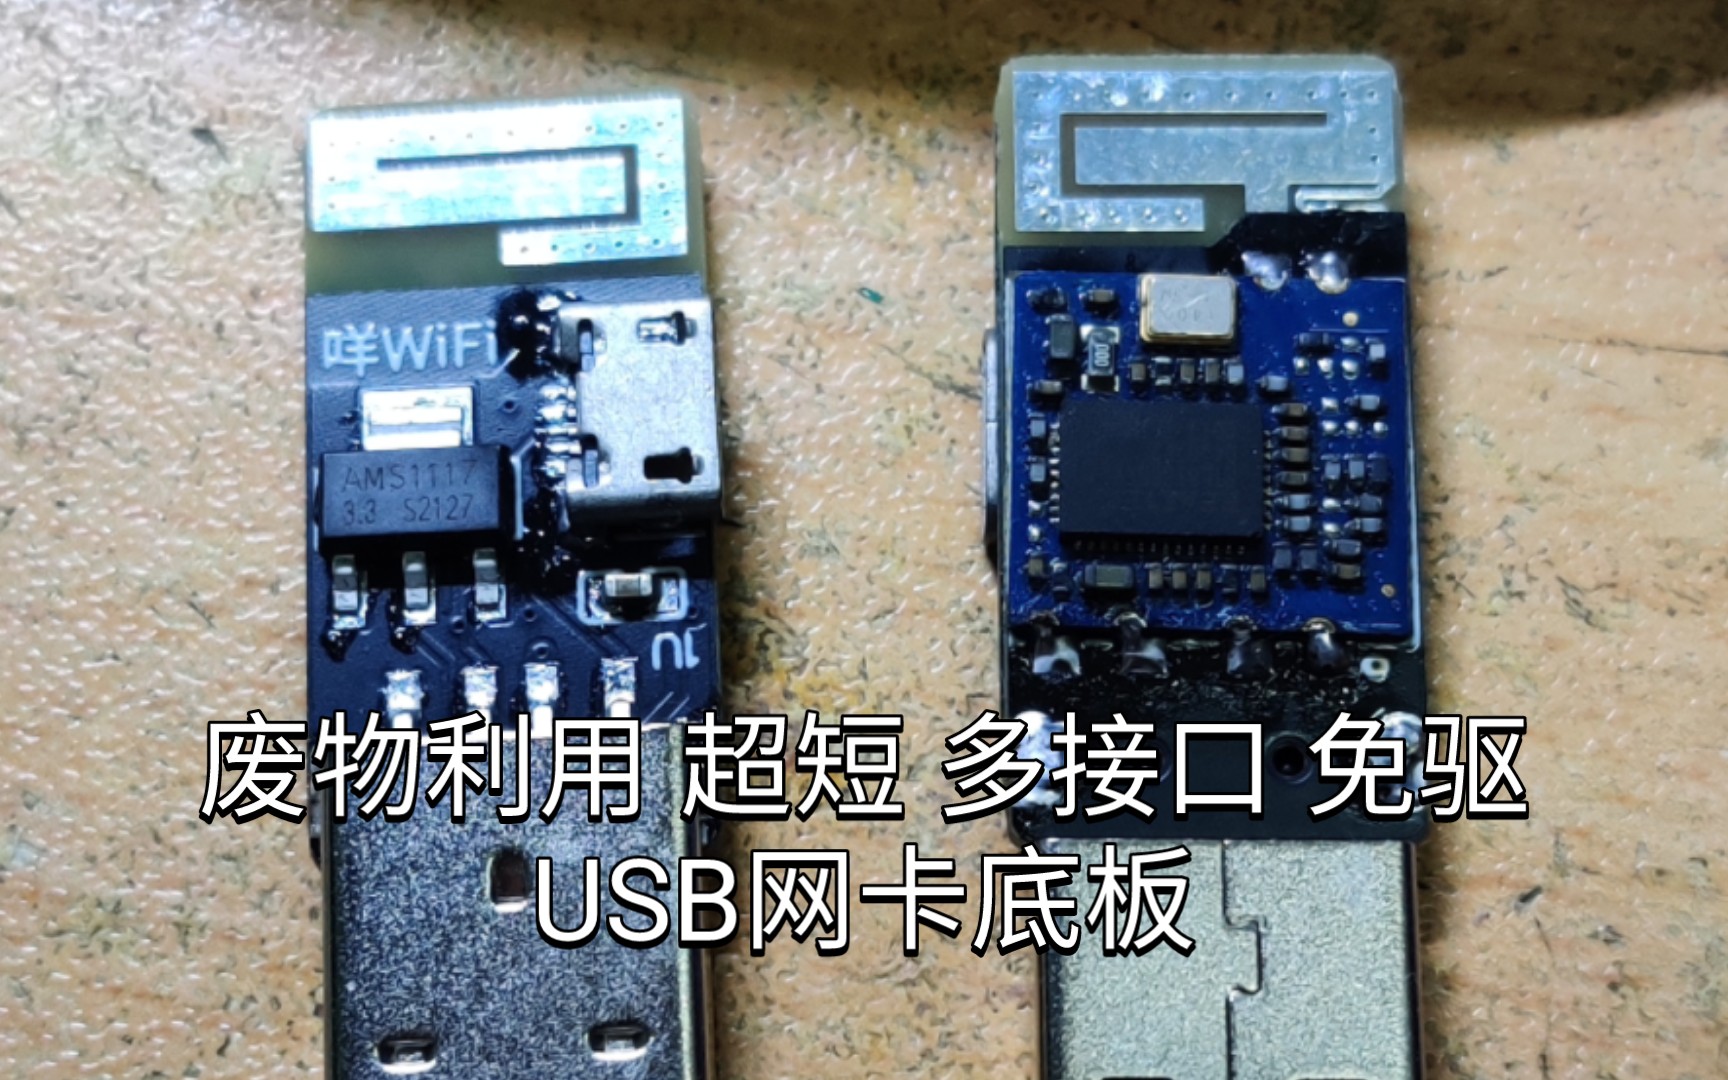 「咩咩焊接」双接口超短RTL8188/MT7601/RTL8723 网卡模块制作廉价USB免驱网卡